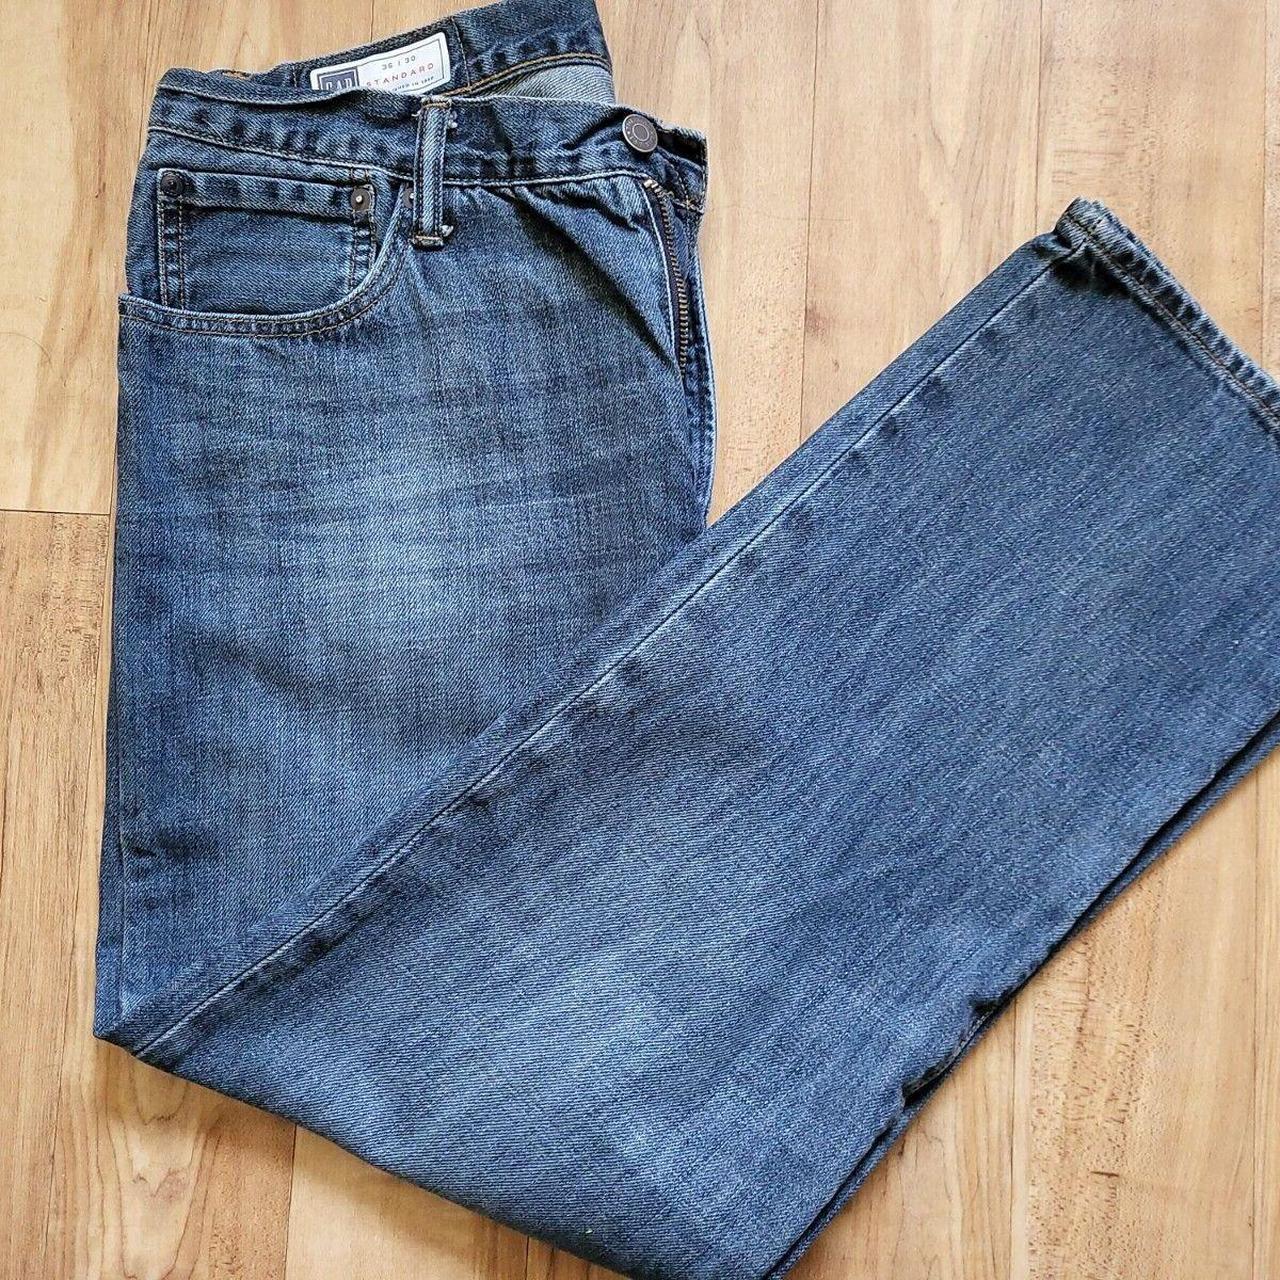 Men's Gap Jeans Blue W36 L30 Denim Jeans Zip Fly... - Depop